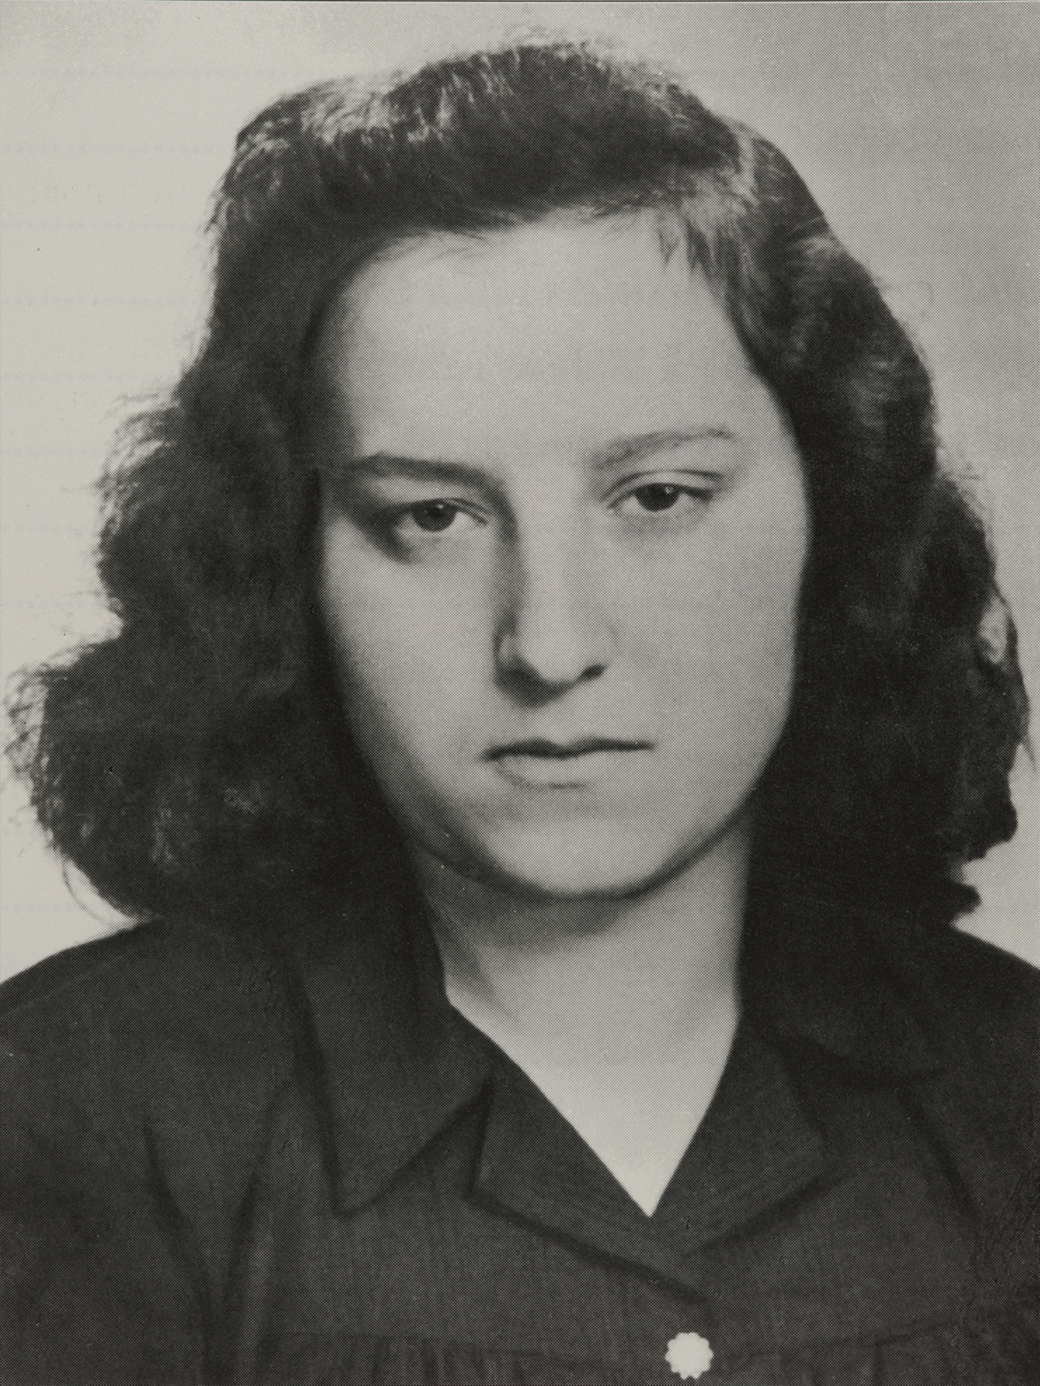 Svartvit porträttfotografi av en ung kvinna med långt mörkt hår.